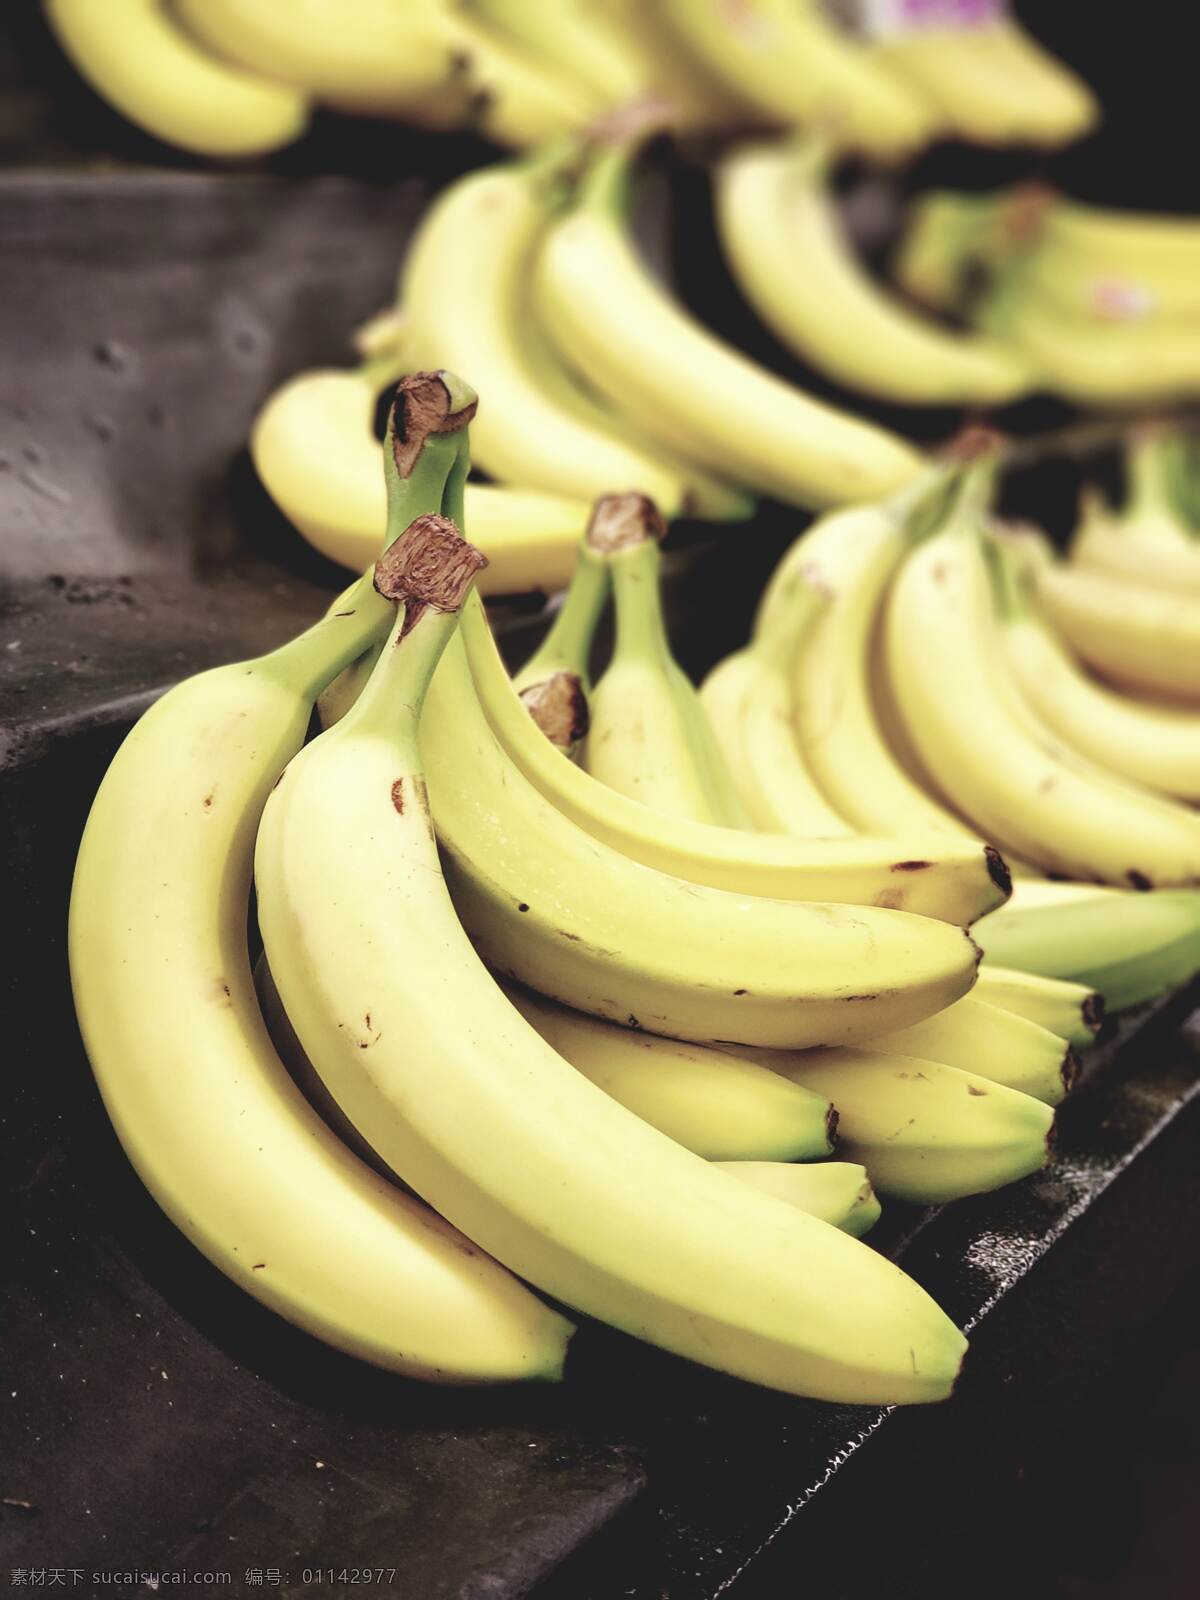 香蕉图片 香蕉 水果 果蔬 自然 新鲜 可口 健康 甜 特写 黄色 黑色 维生素 食物 餐饮美食 食物原料